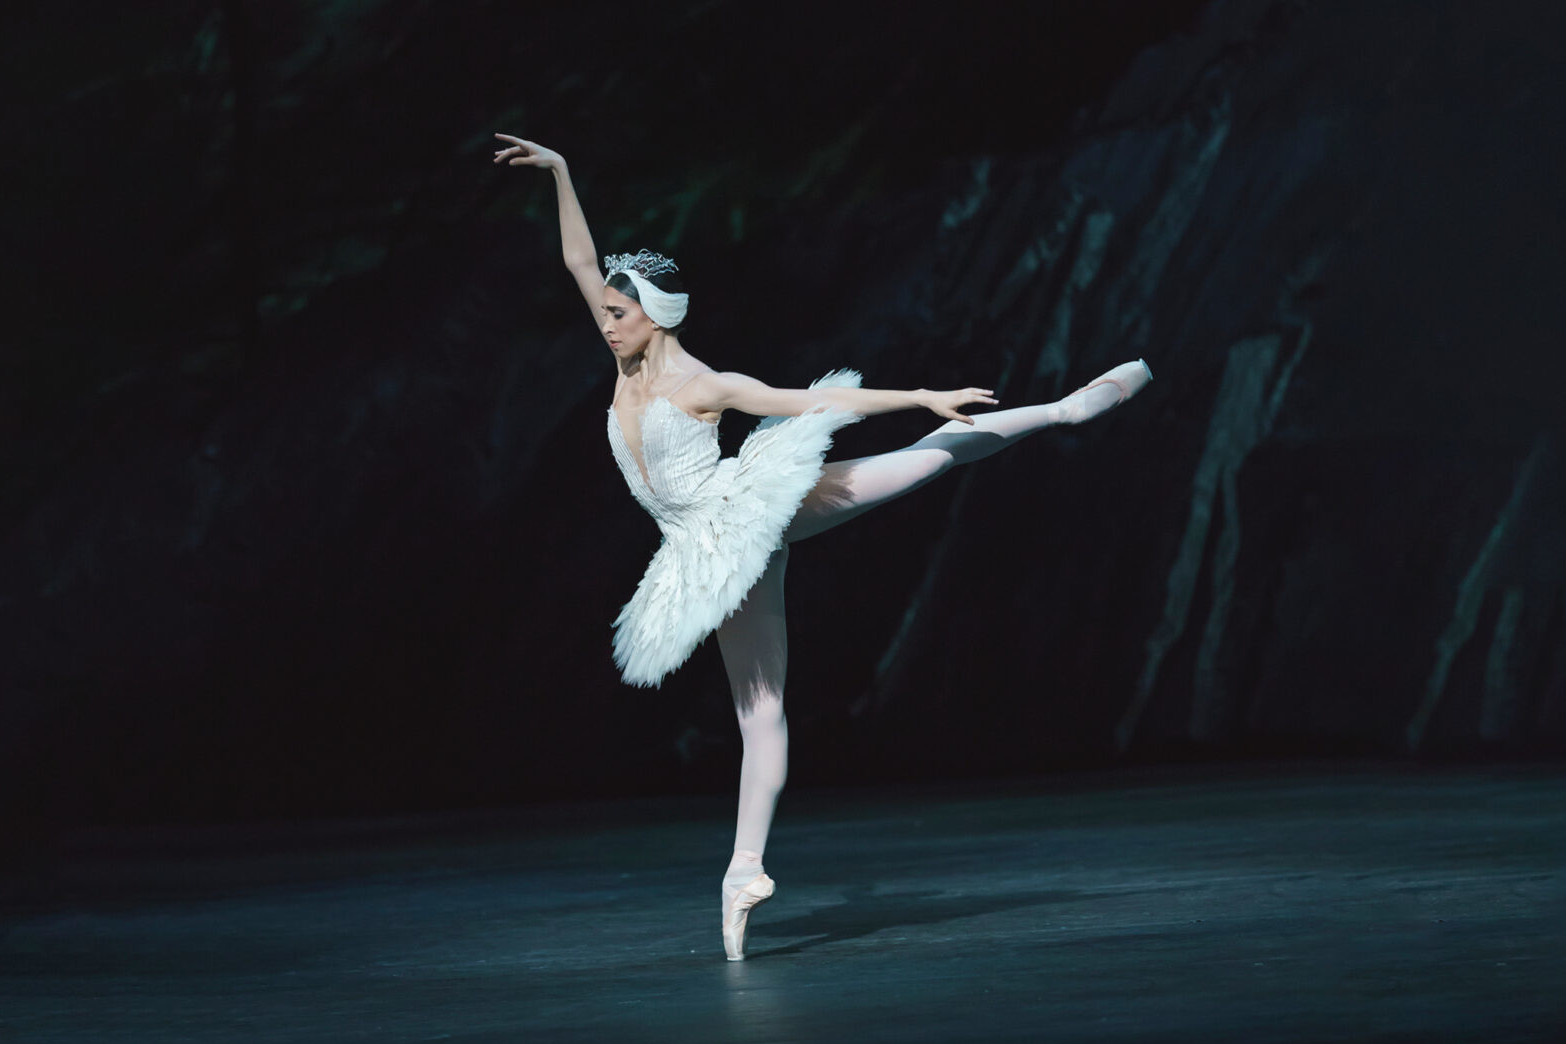 Royal Ballet: Swan Lake